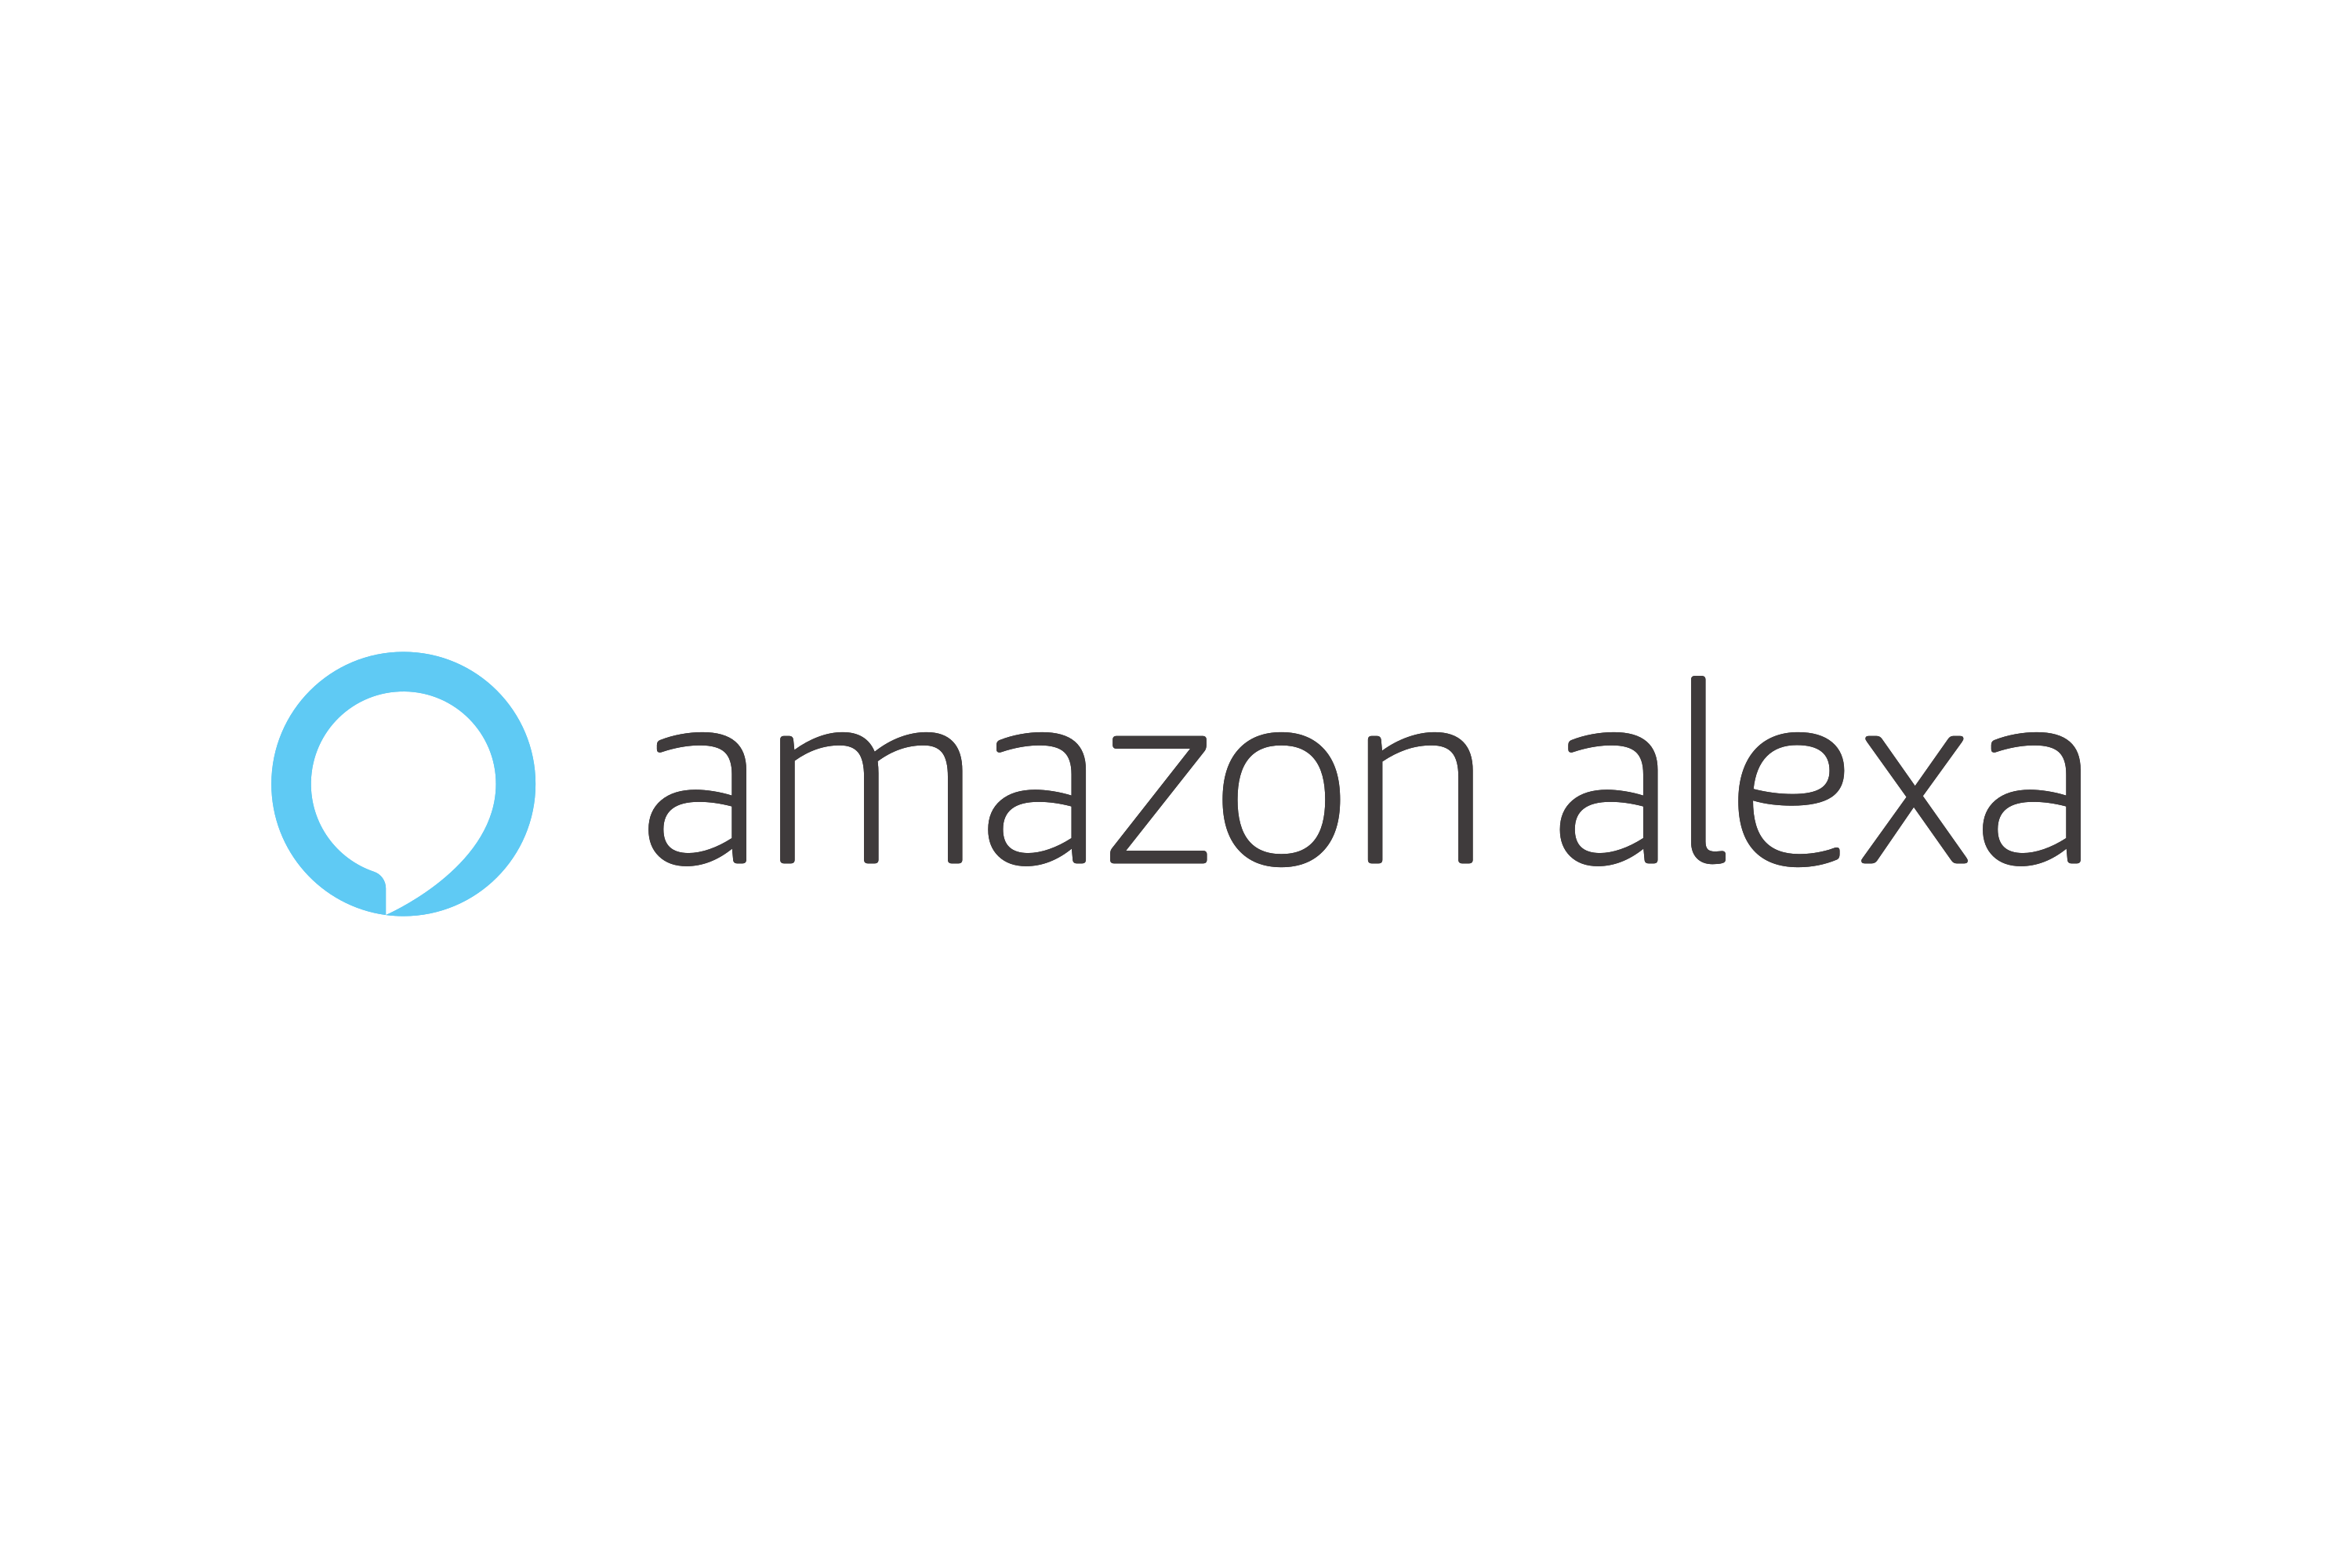 Alexa-logo 